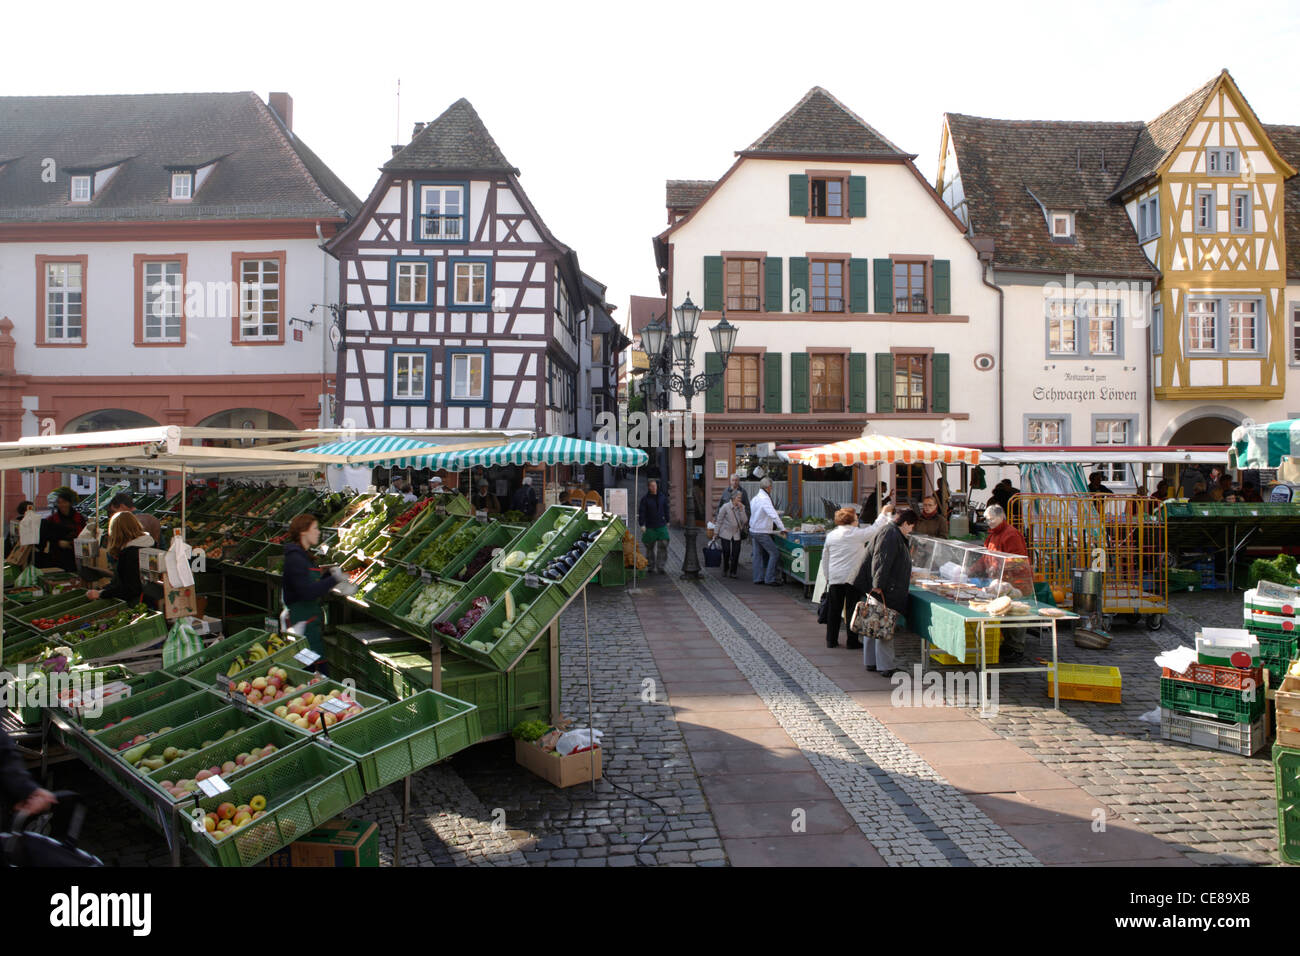 Markt auf dem Marktplatz, Neustadt an der Weinstrasse,Rheinland-Pfalz, Deutschland,Europa Stock Photo